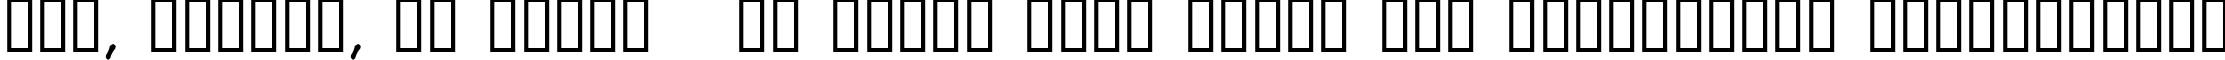 Пример написания шрифтом AwlScrawl текста на украинском